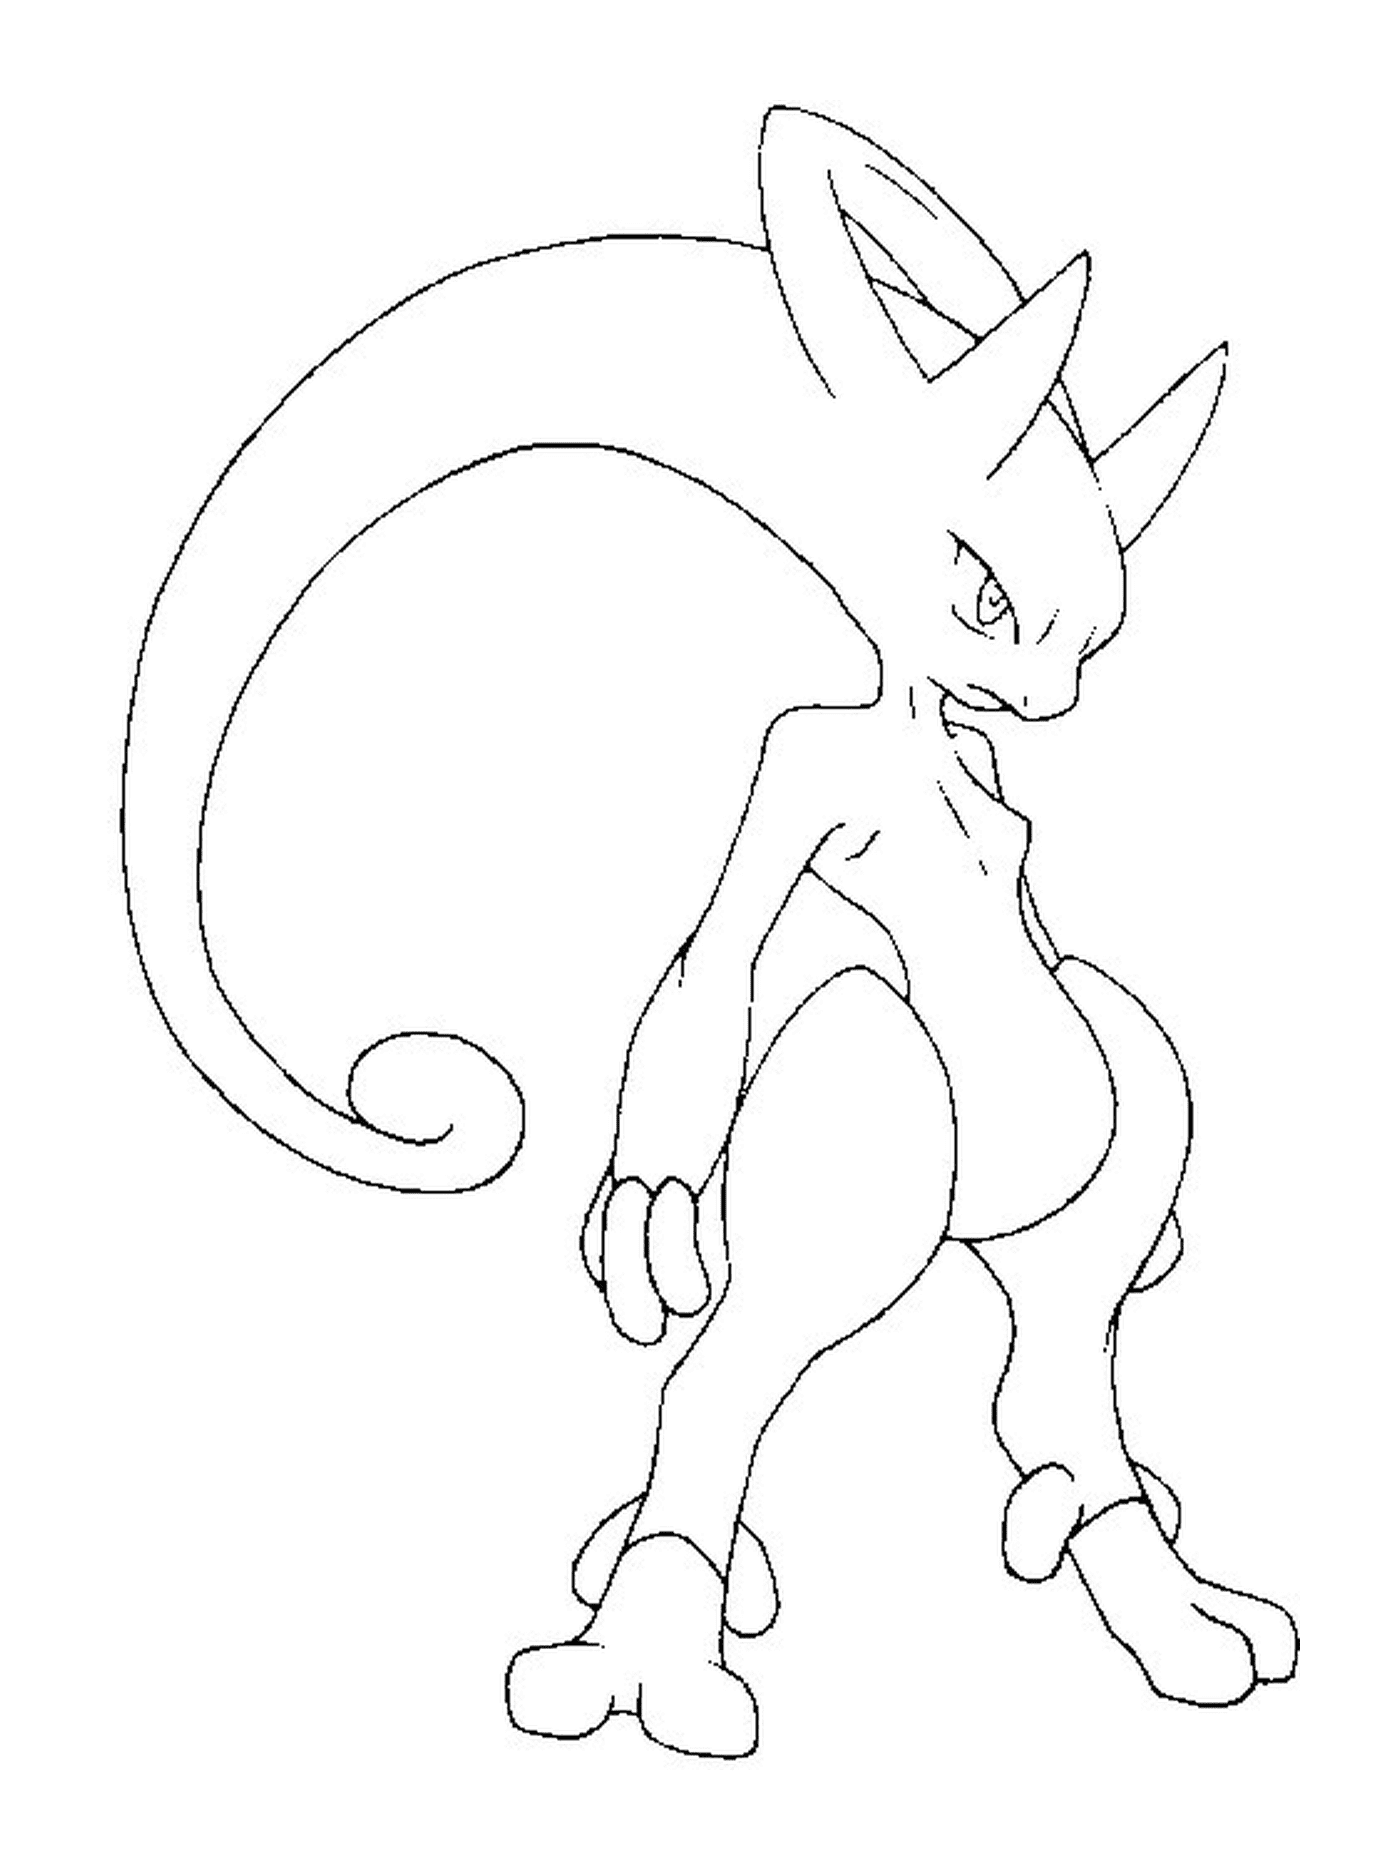  Mewtwo Y, ein schwarz-weißer Pokémon 